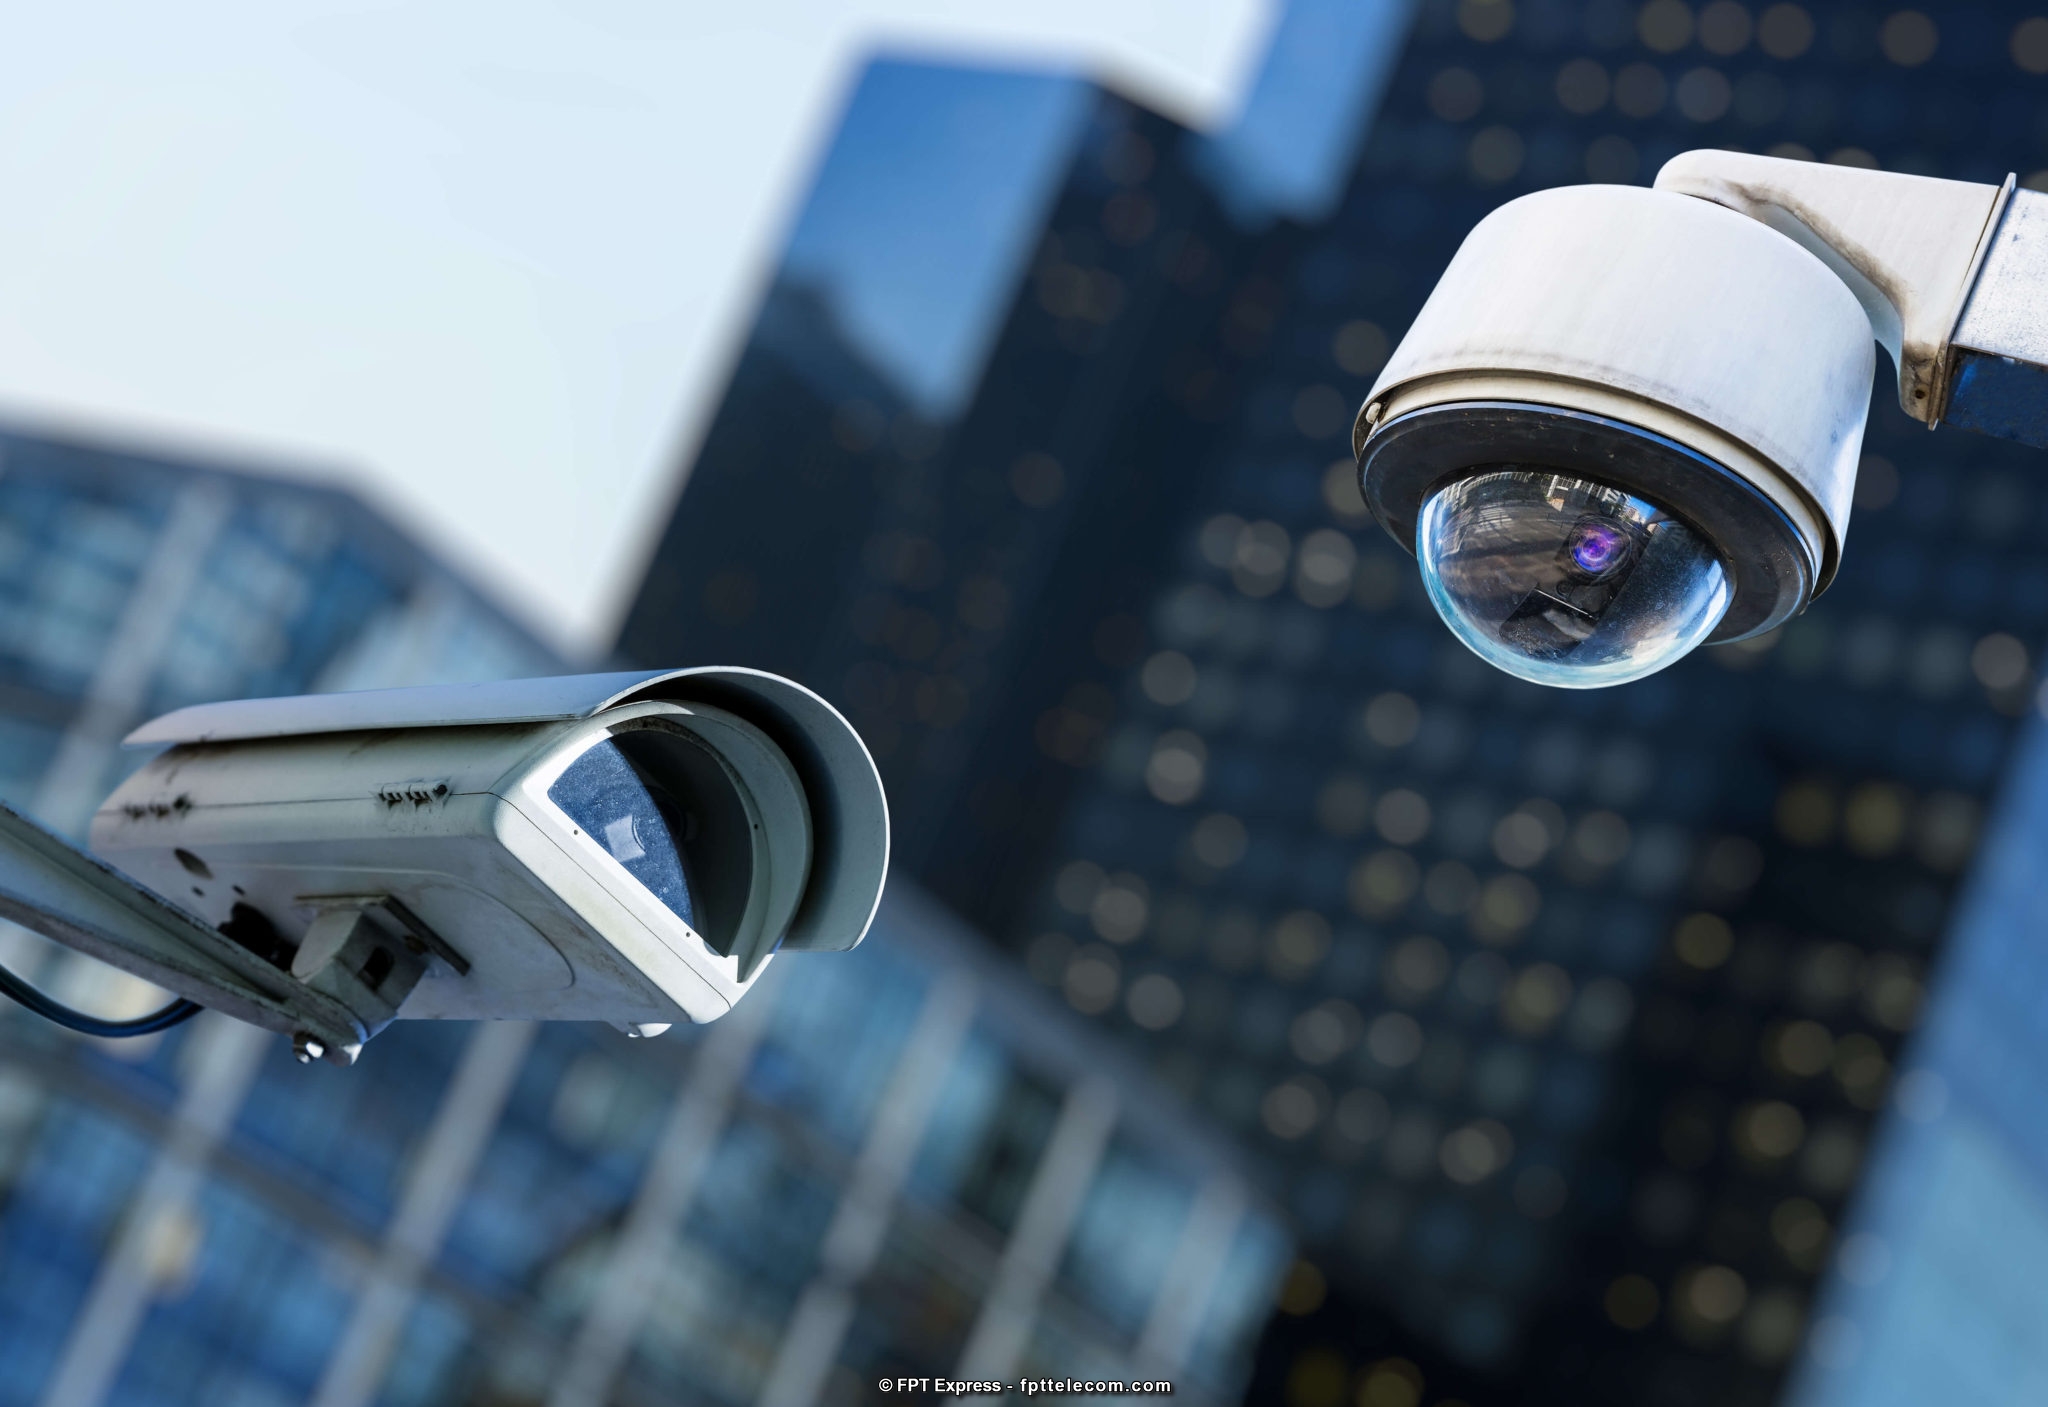 Hệ thống CCTV được sử dụng phổ biến ở nhiều nơi, từ doanh nghiệp đến hộ gia đình, từ thành thị đến nông thôn